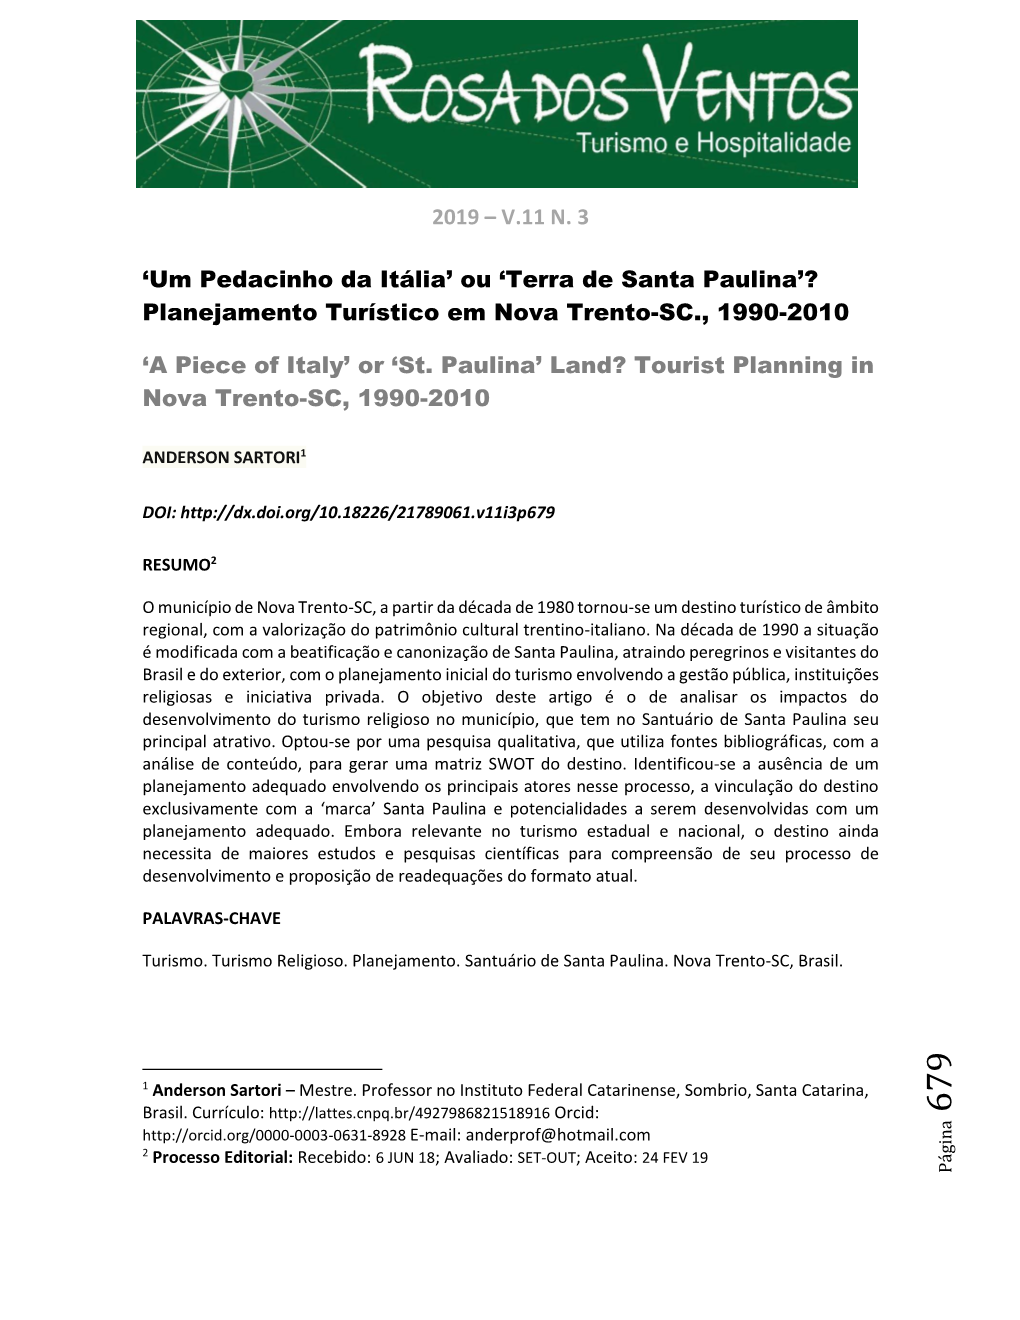 Planejamento Turístico Em Nova Trento-SC., 1990-2010